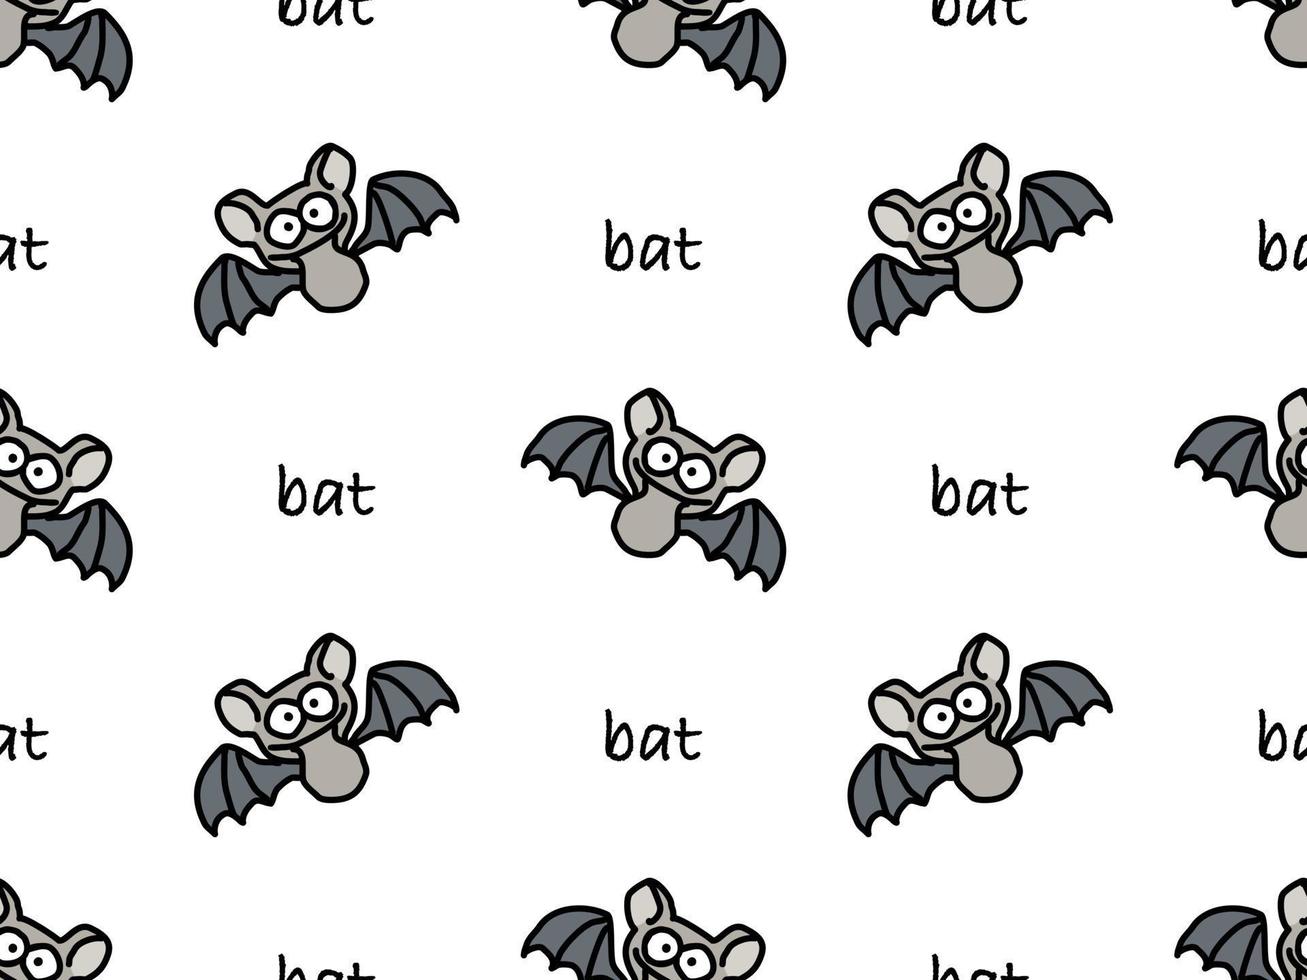 Bat personaje de dibujos animados de patrones sin fisuras sobre fondo blanco. vector